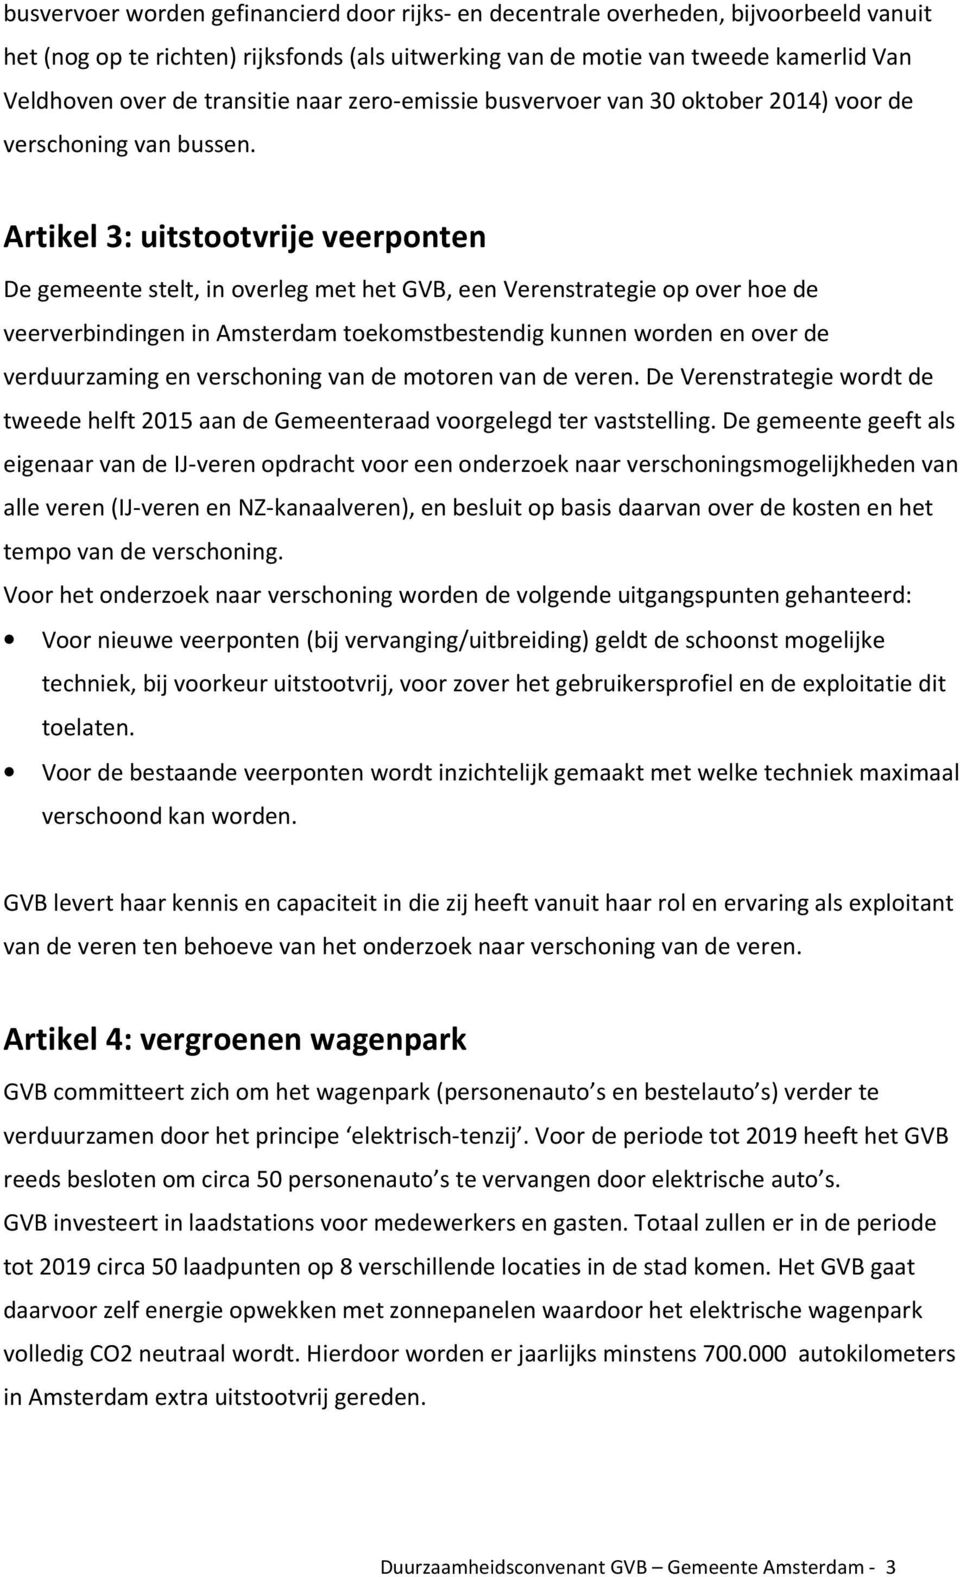 Artikel 3: uitstootvrije veerponten De gemeente stelt, in overleg met het GVB, een Verenstrategie op over hoe de veerverbindingen in Amsterdam toekomstbestendig kunnen worden en over de verduurzaming